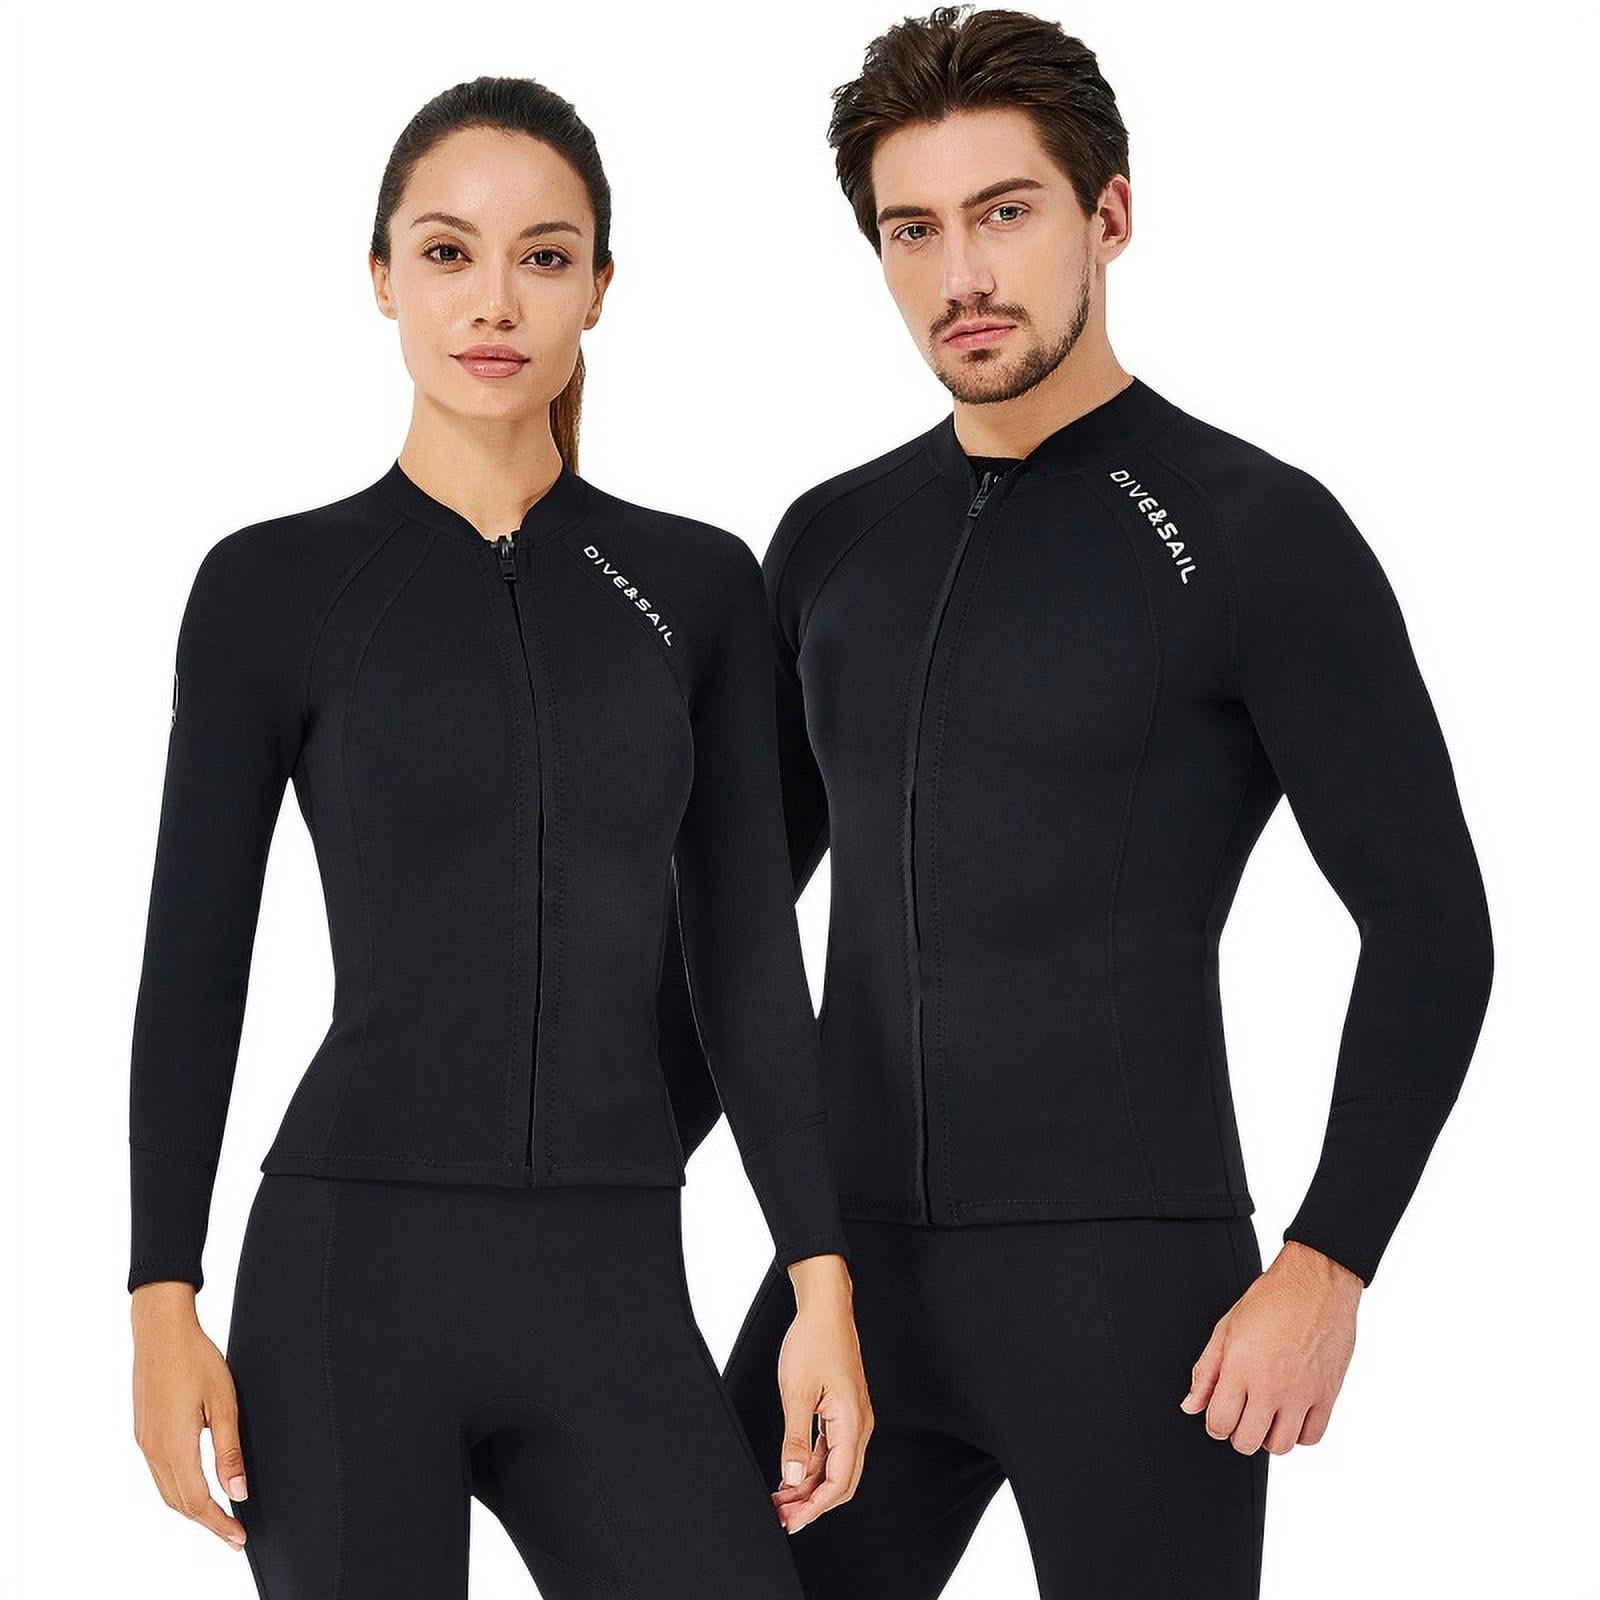 Men 2mm Wetsuit Jacket Neoprene Long Sleeve Diving Surfing Top Swimsuit Swimwear 